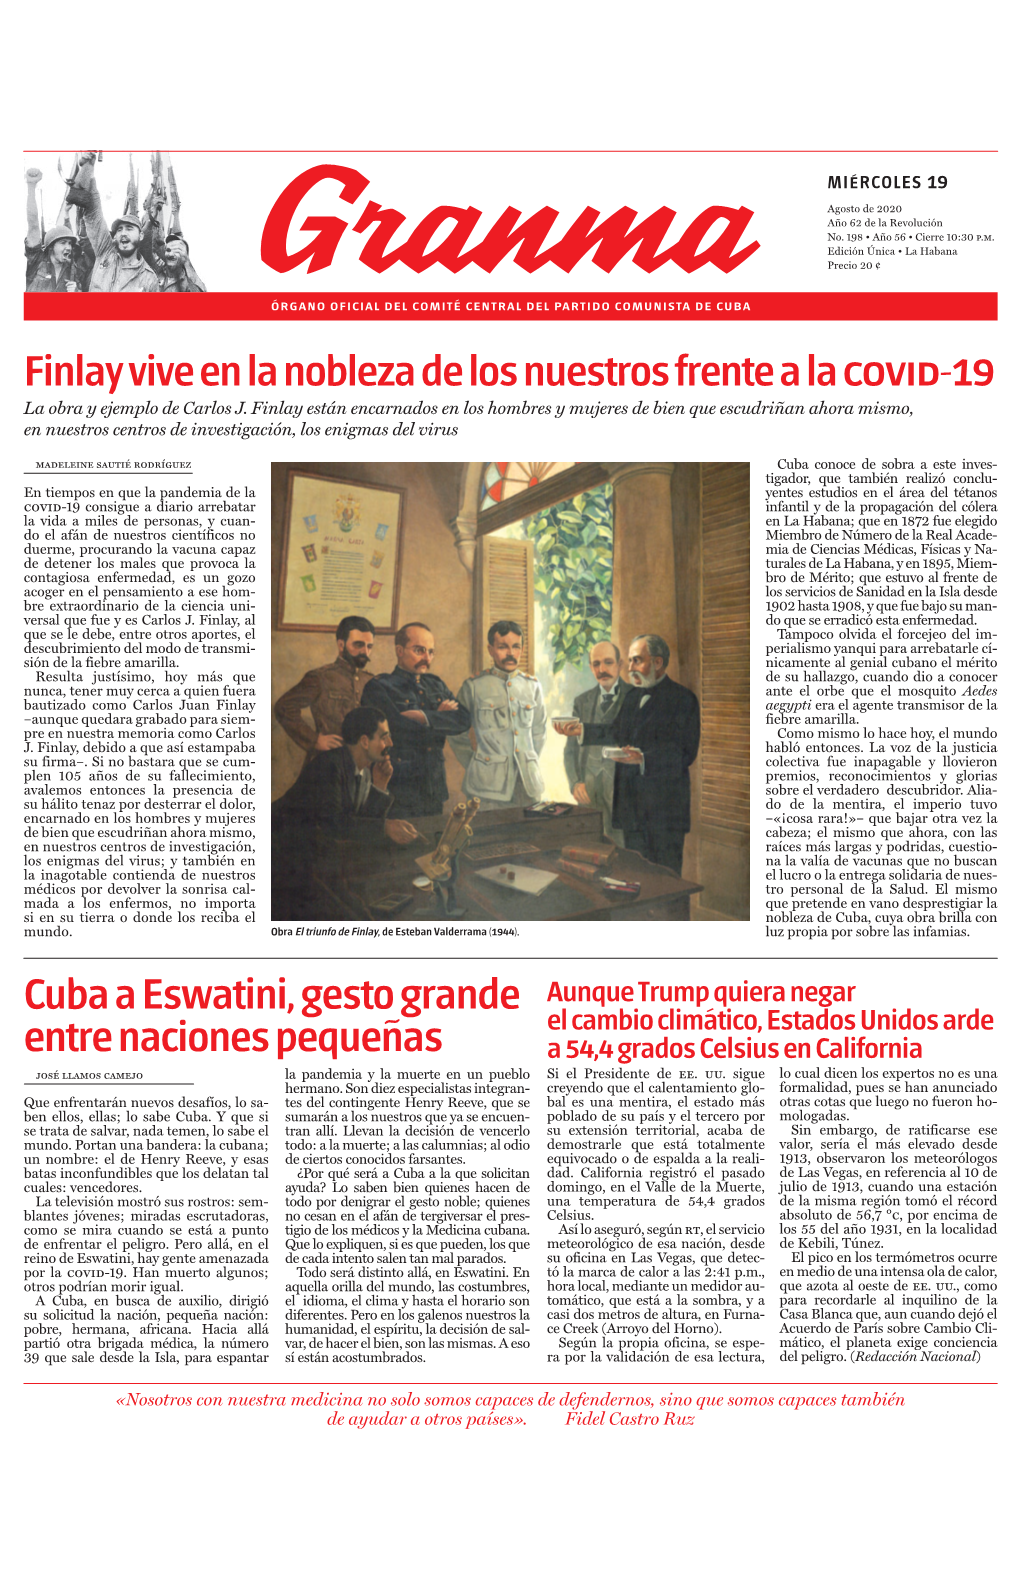 Finlay Vive En La Nobleza De Los Nuestros Frente a La Covid-19 Cuba